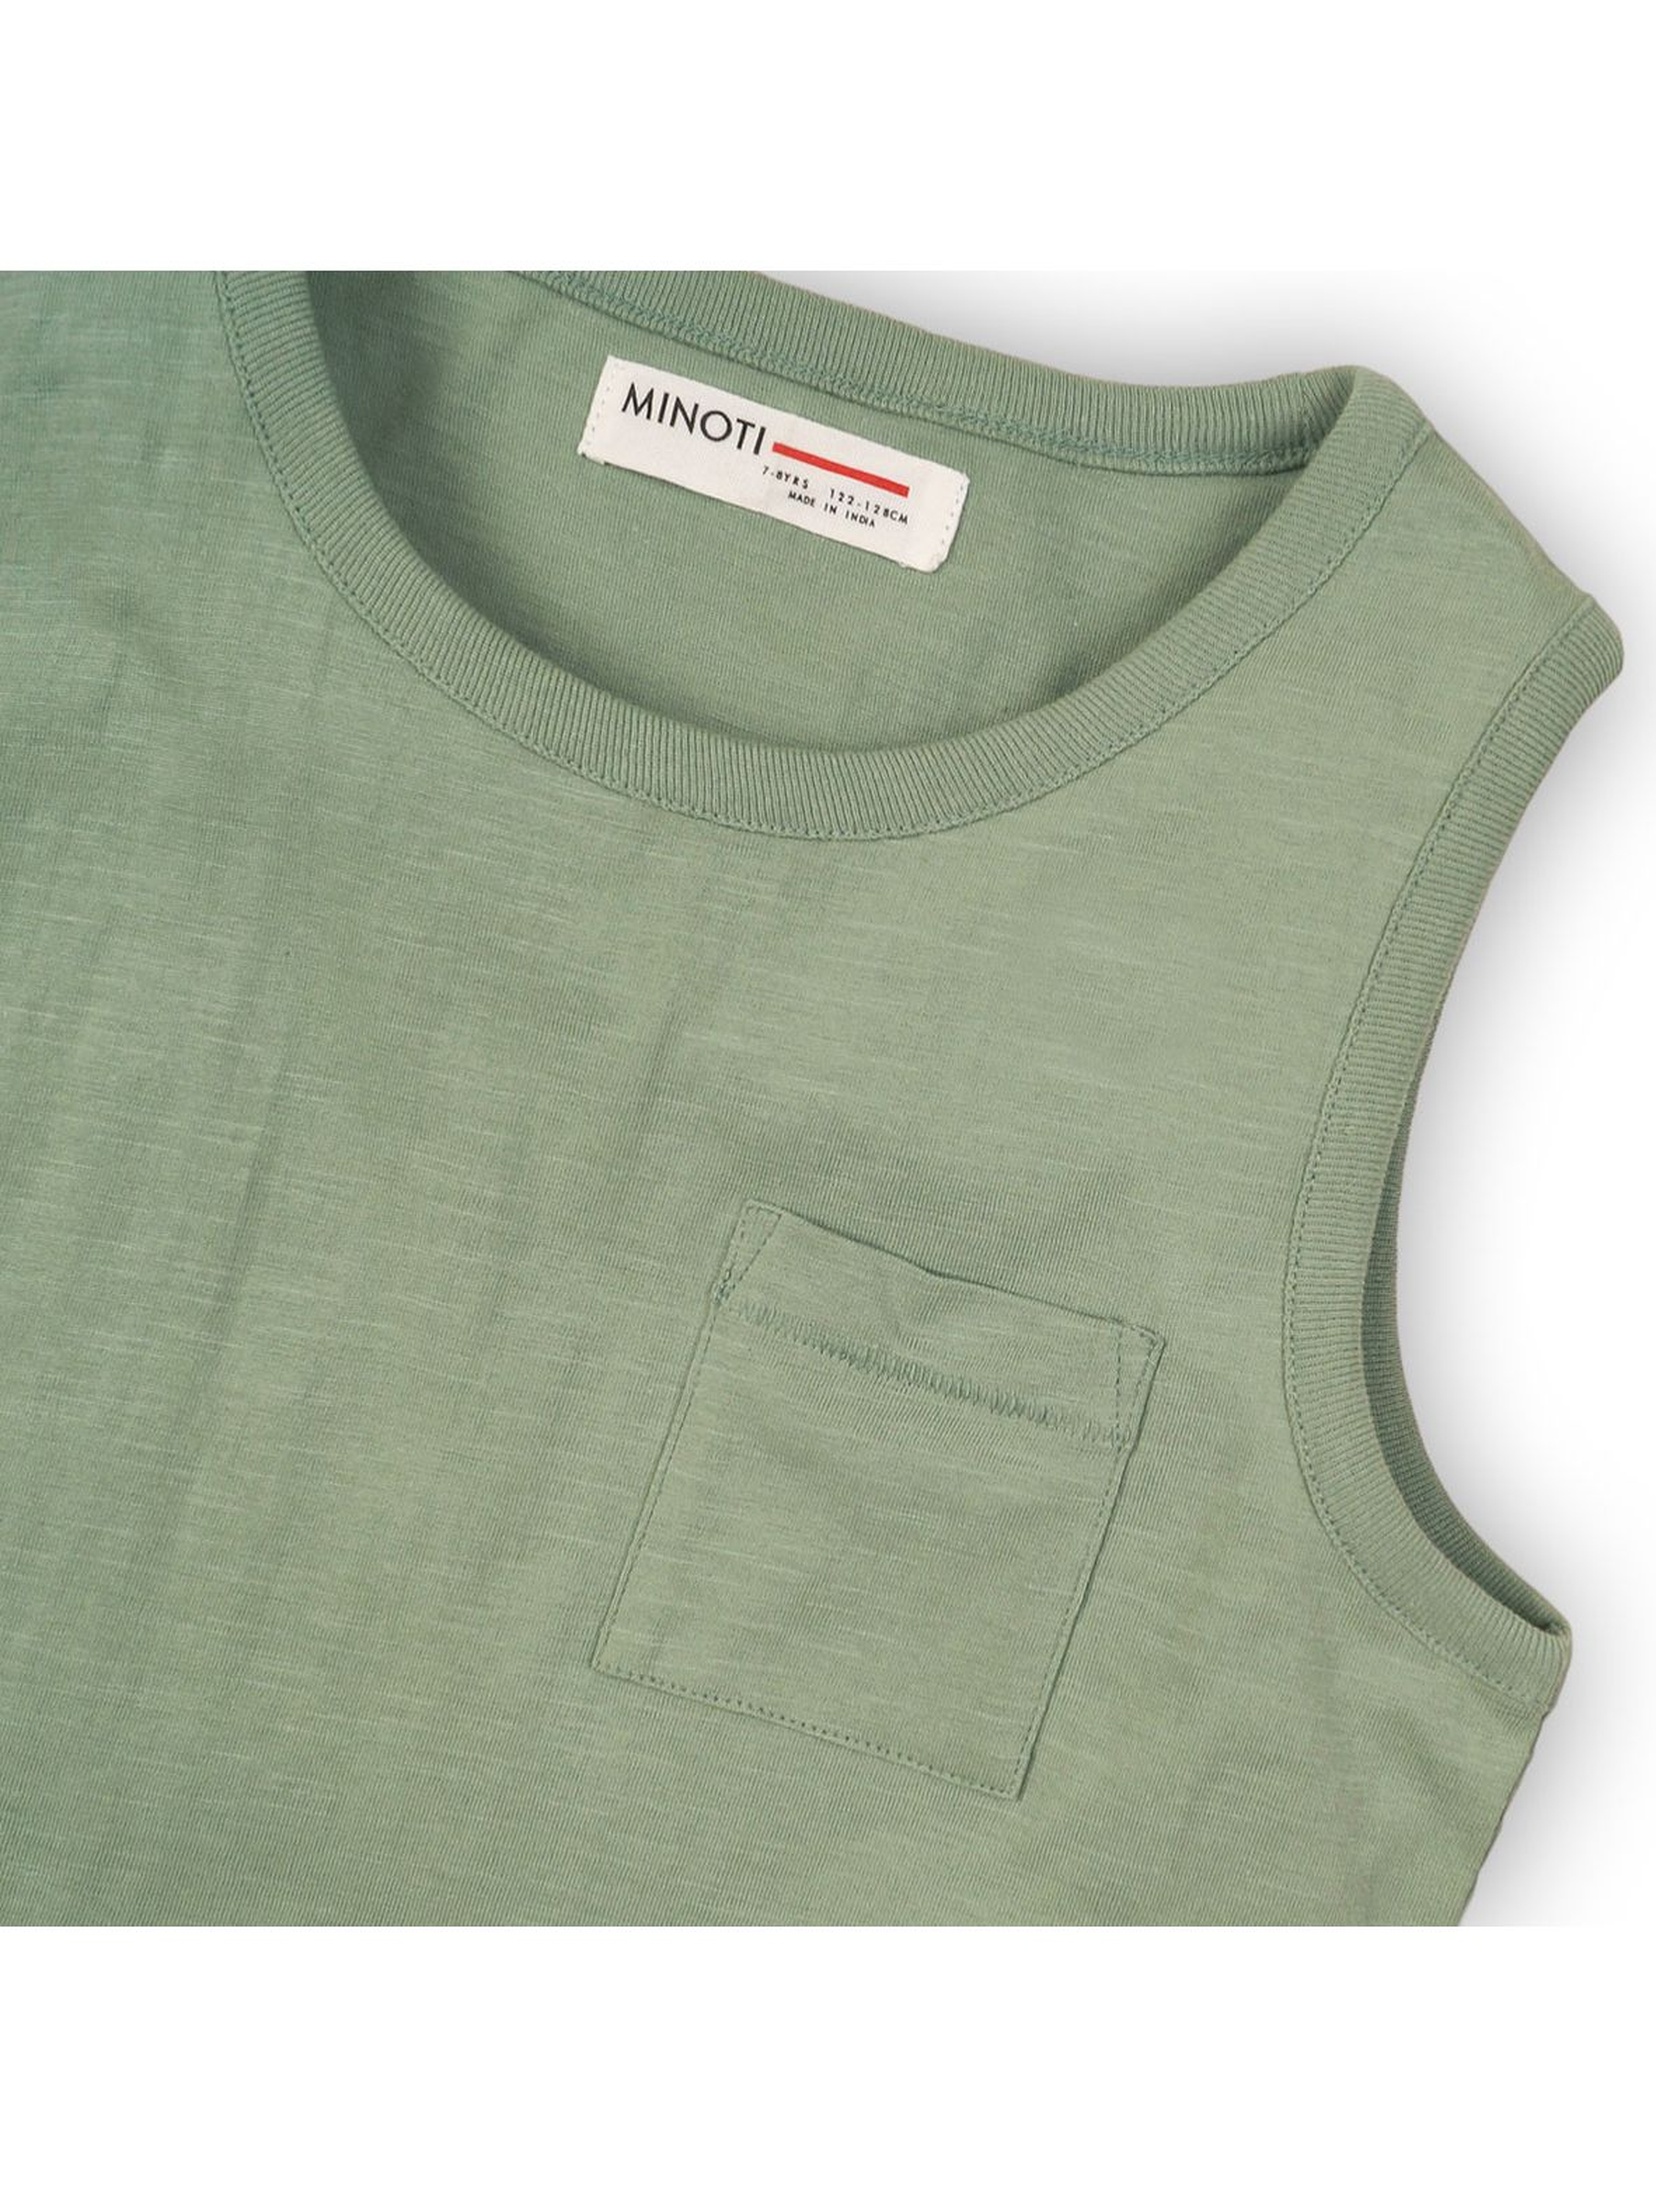 Zielona bluzka na ramiączka- 100% bawełna